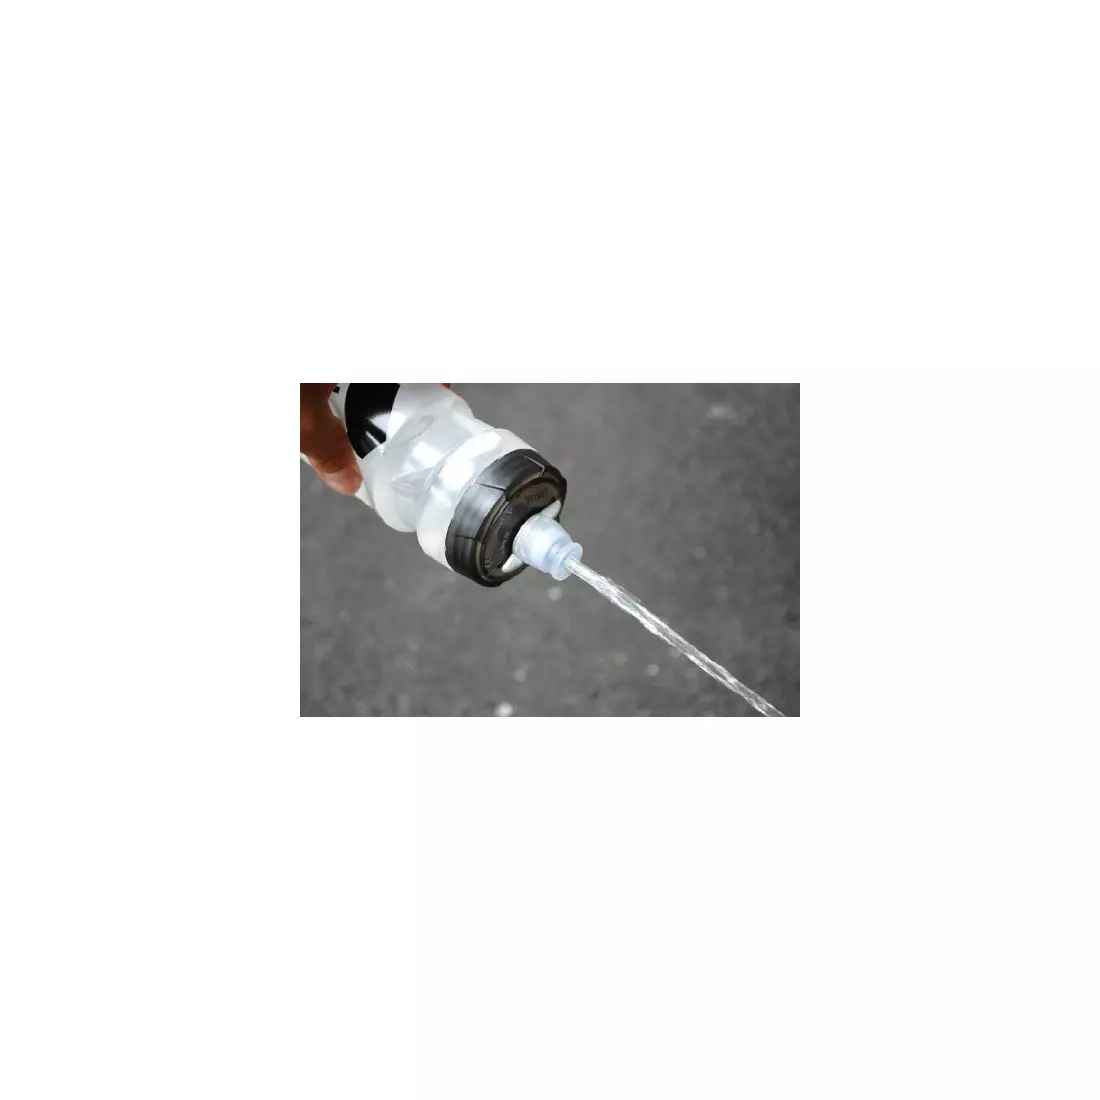 Camelbak SS17 láhev s termální vodou s běžící rukojetí Quick Grip Chill 21oz / 620 ml Black/Atomic Blue 1040002900